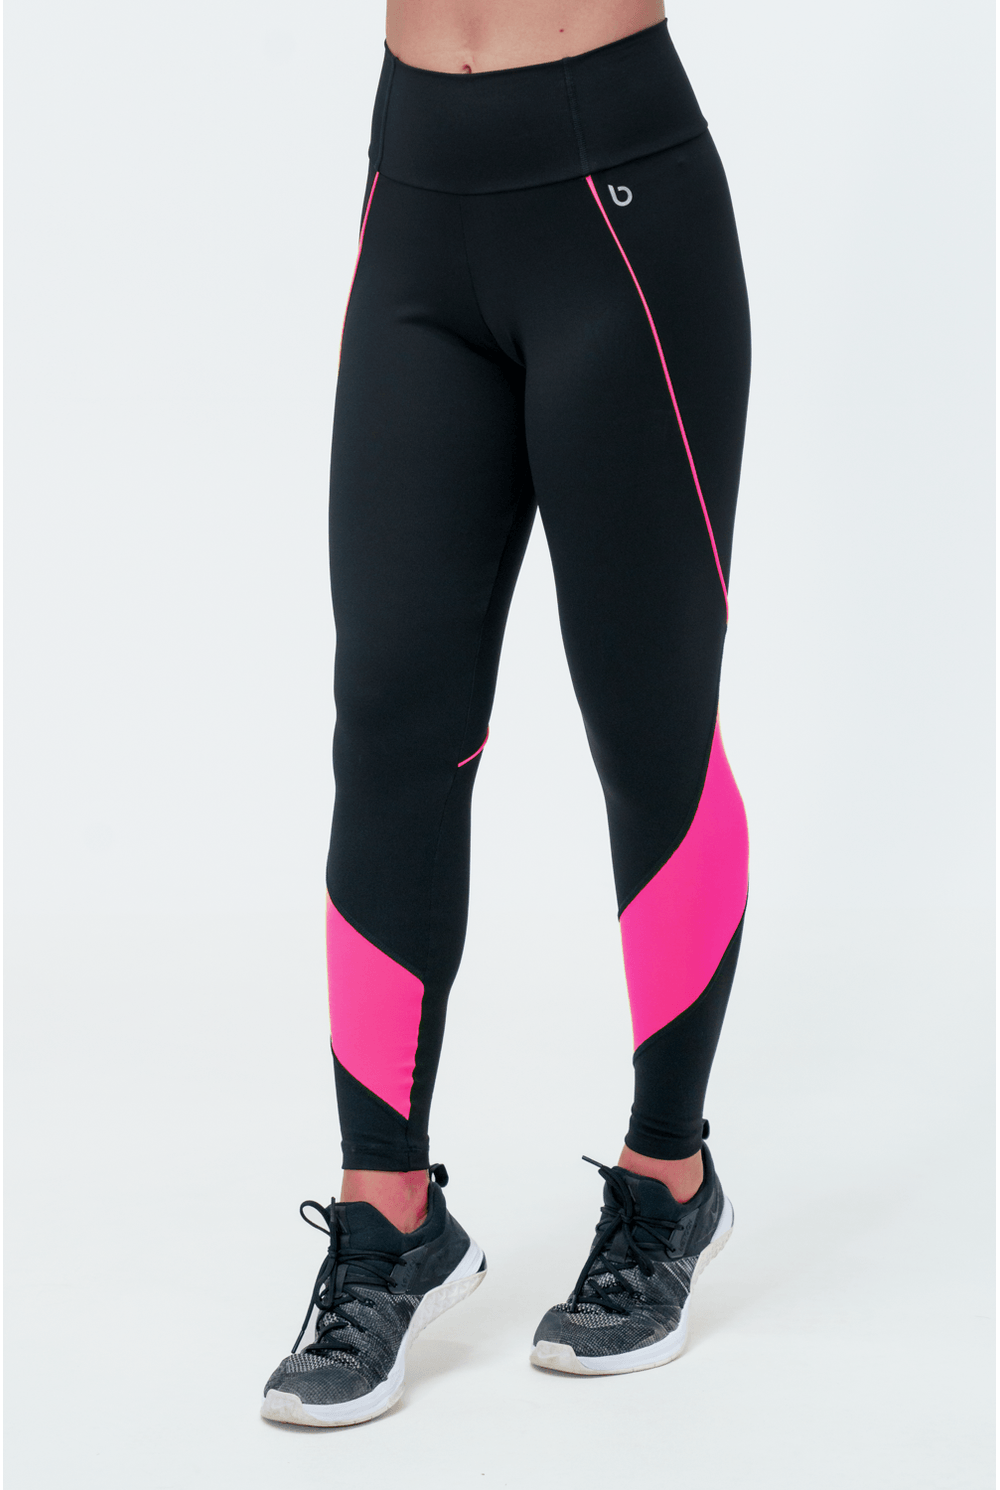 Calça Legging com Faixa Assimétrica (Preto / Rosa Neon)